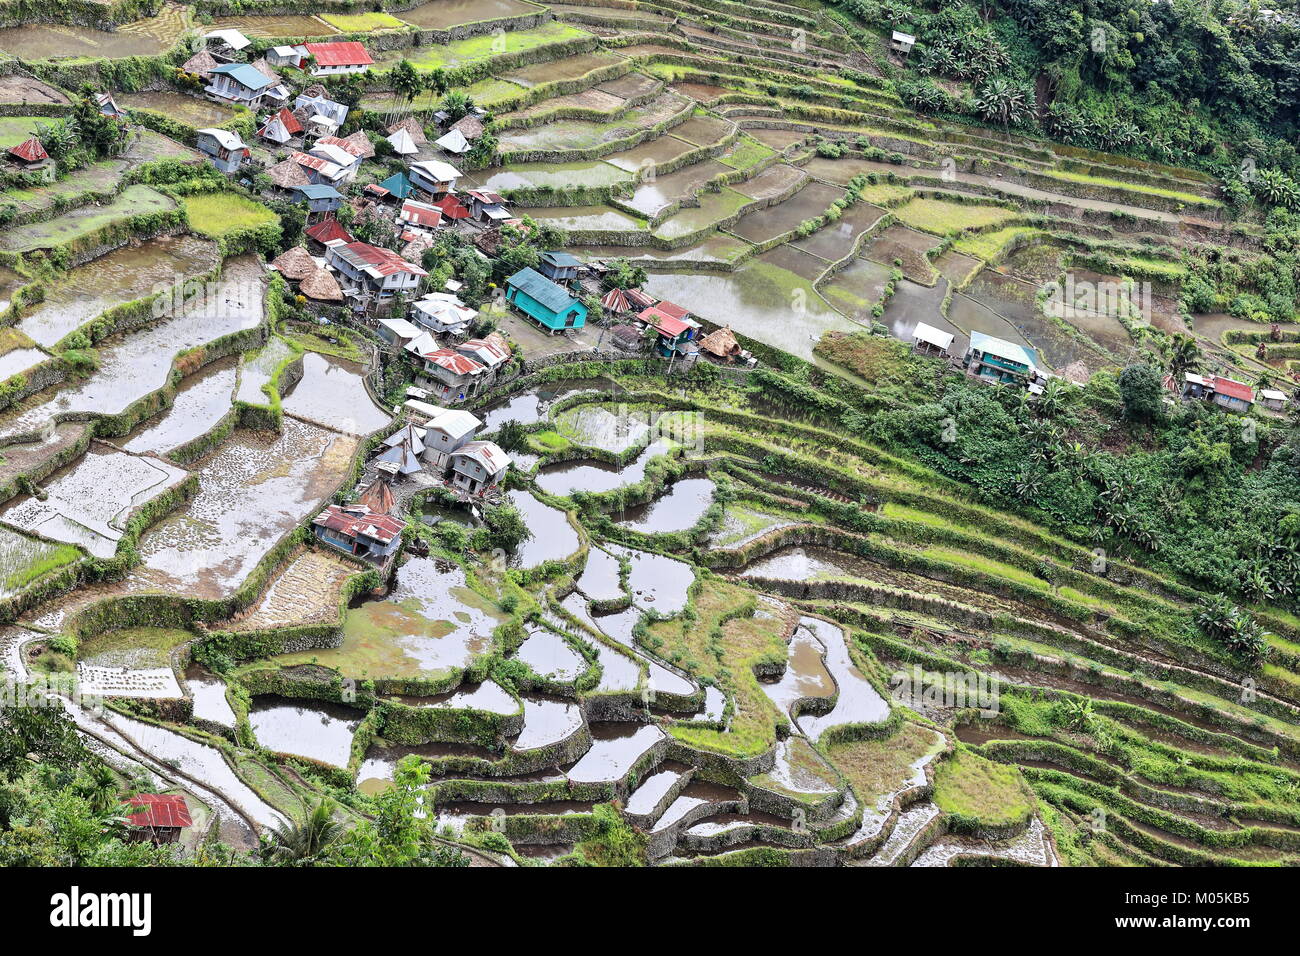 Le village de Batad cluster-partie de les rizières en terrasses des cordillères des Philippines Site du patrimoine mondial de l'Unesco dans la catégorie des paysages culturels. Banau Banque D'Images